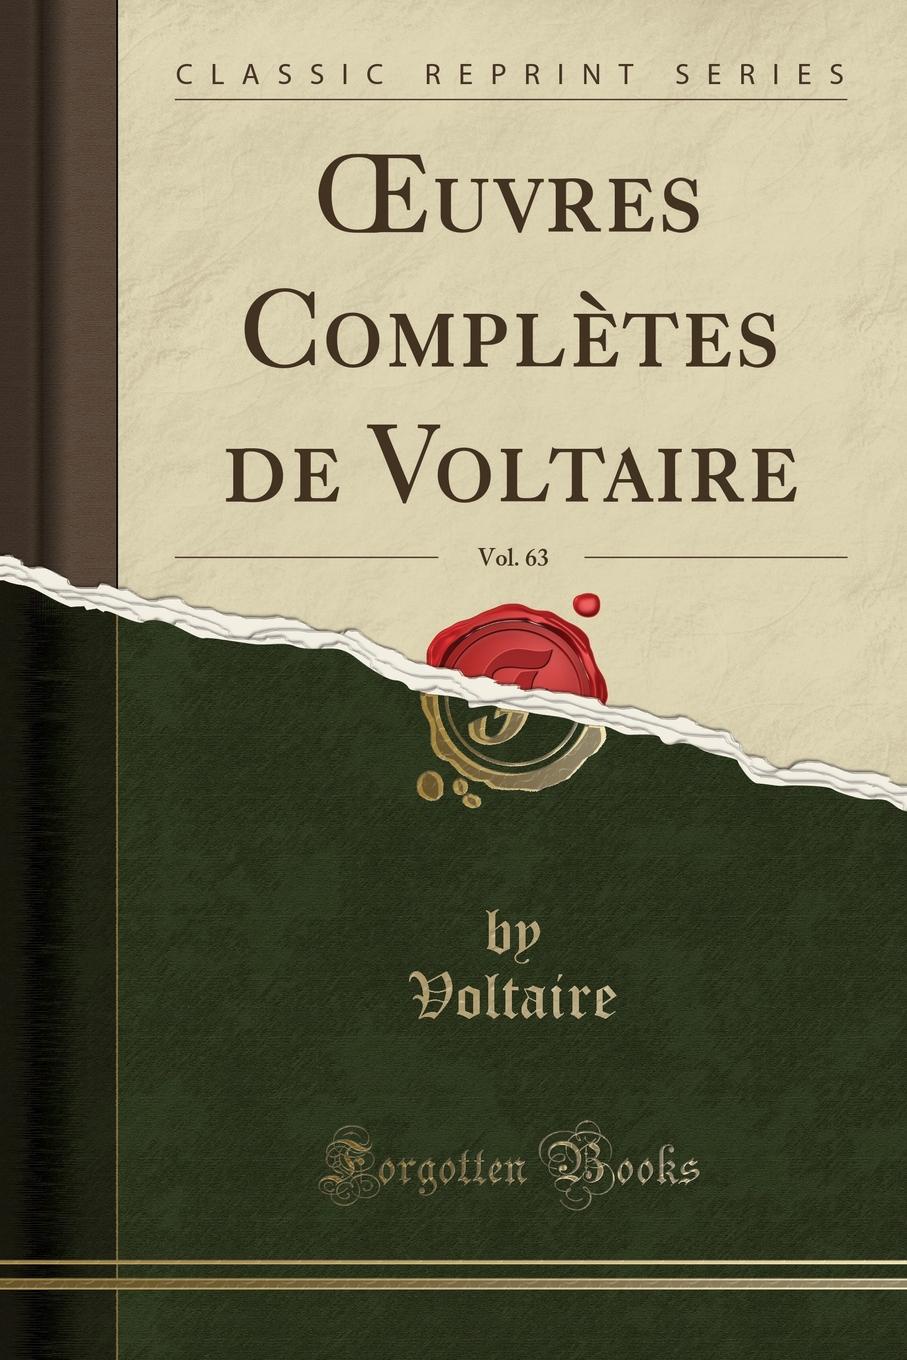 Voltaire Voltaire OEuvres Completes de Voltaire, Vol. 63 (Classic Reprint)